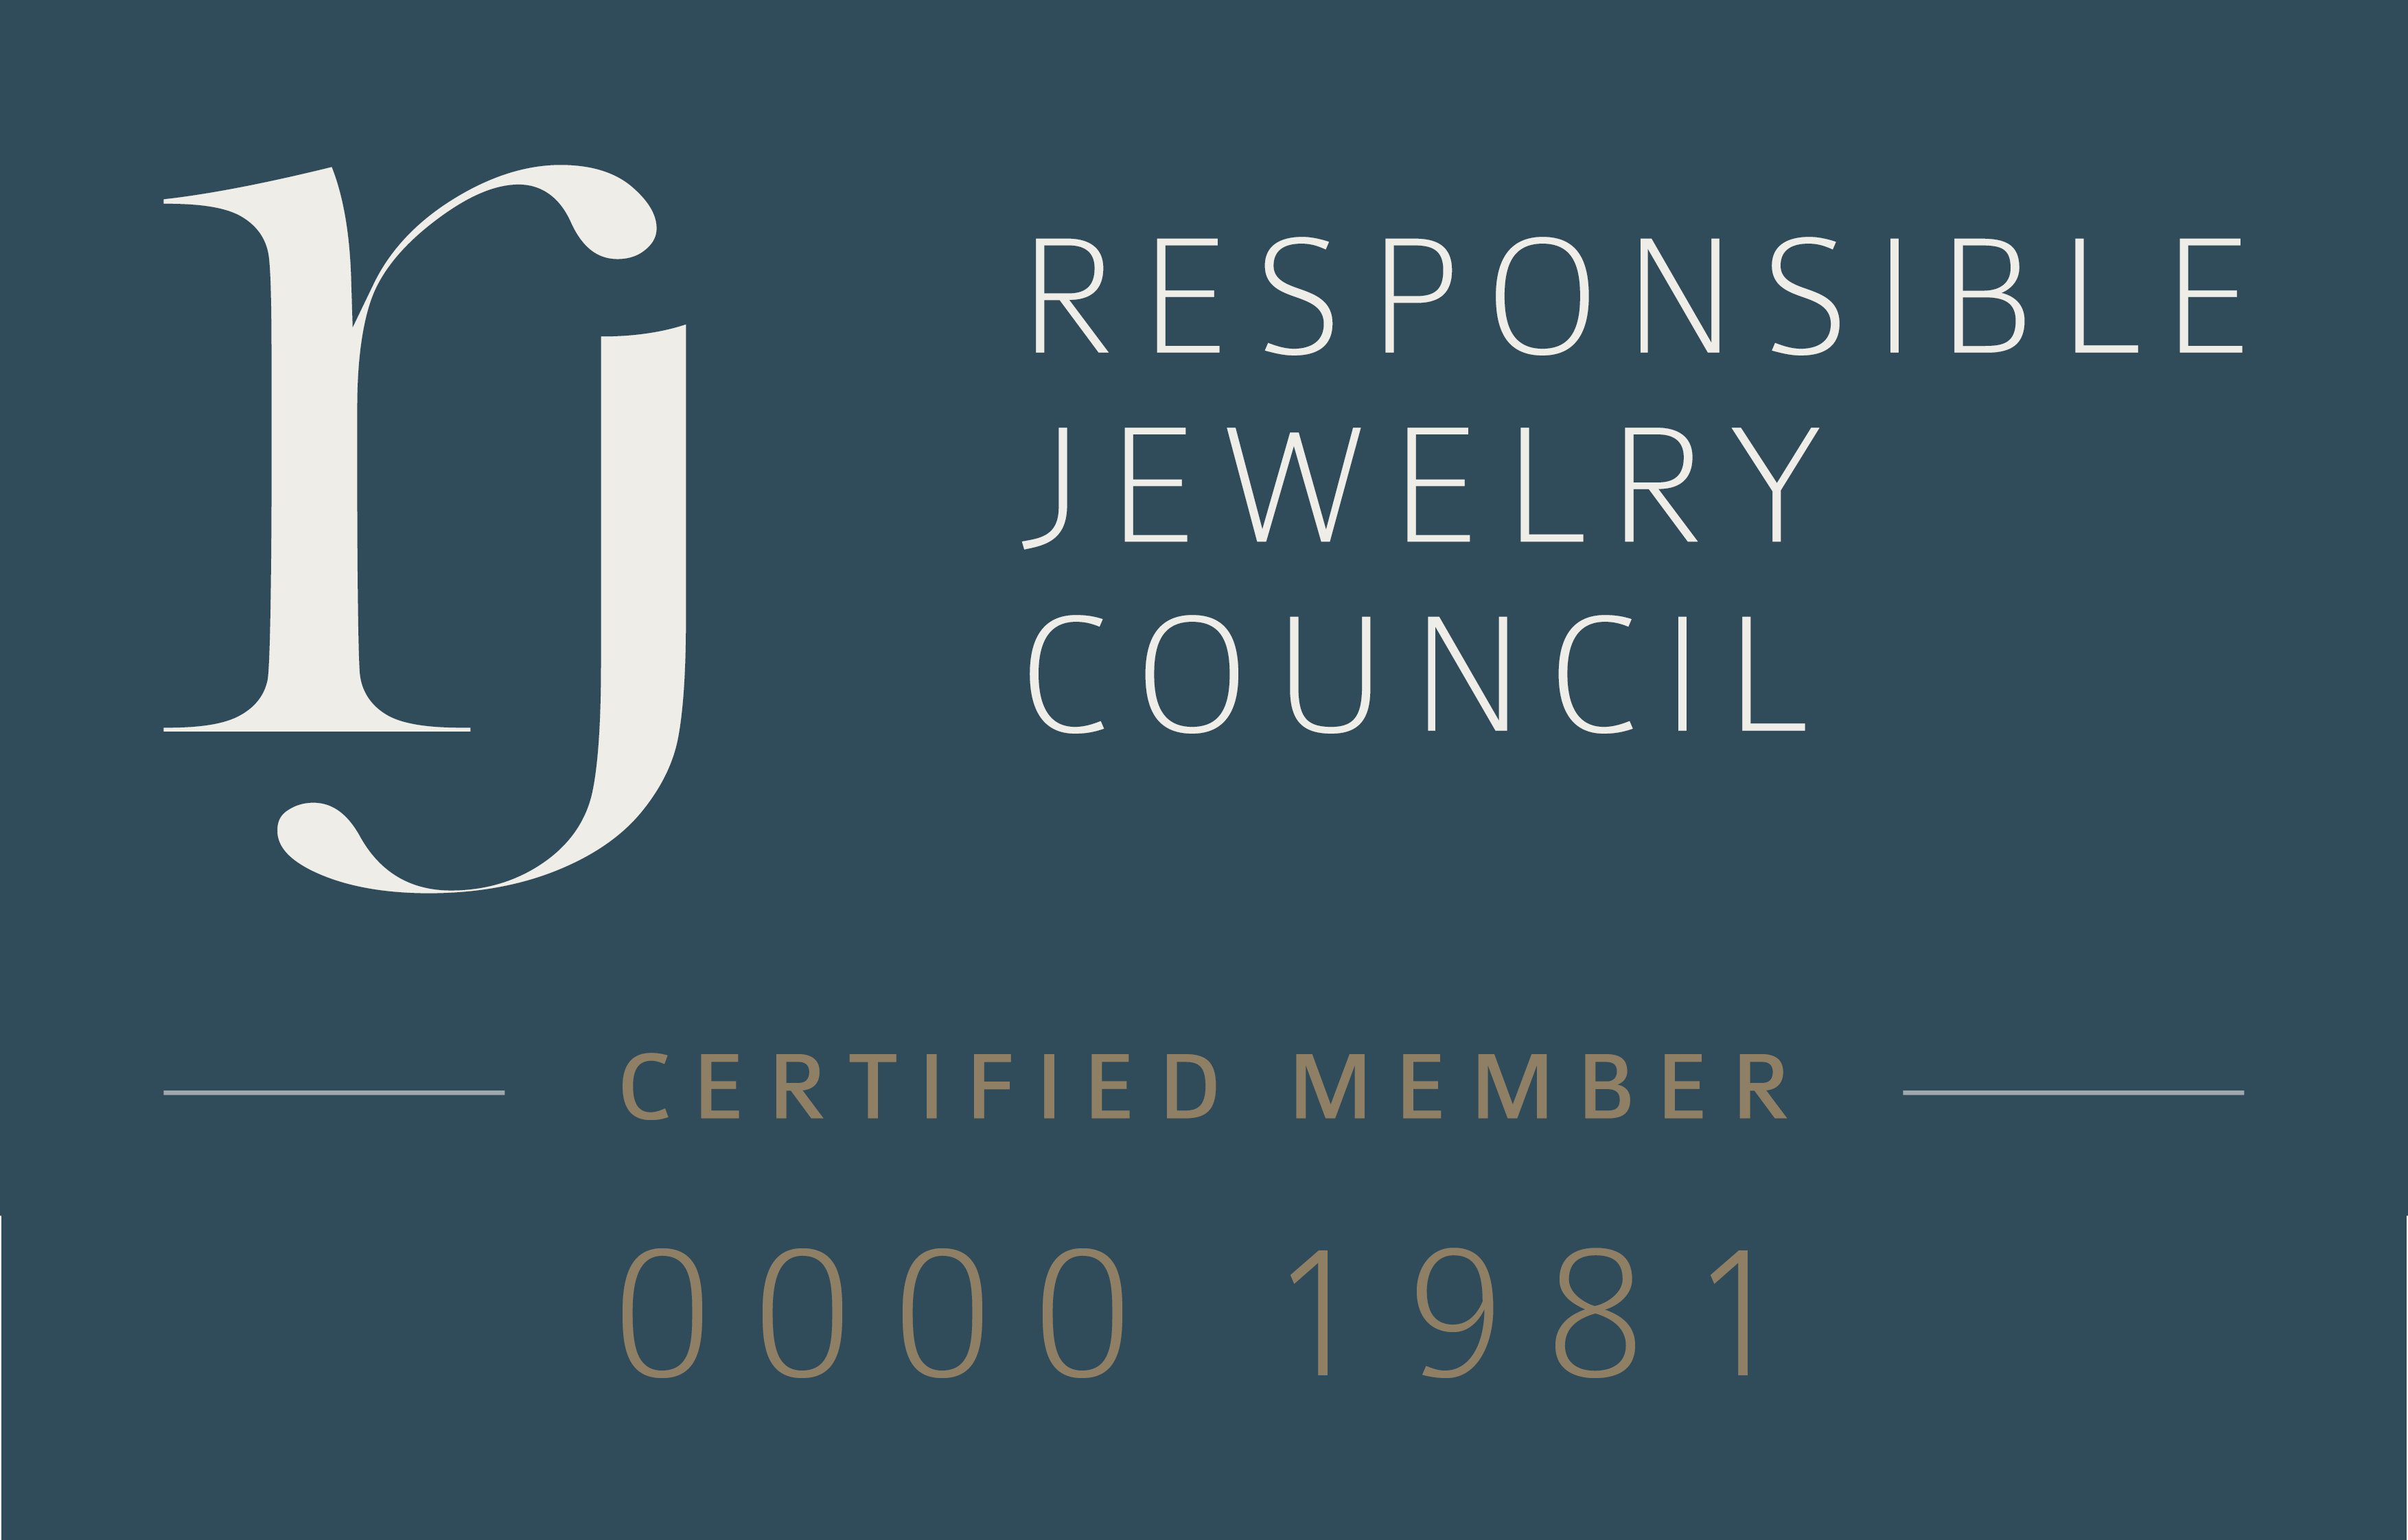 TOUS se convierte en miembro certificado del Responsible Jewellery Council, otra meta alcanzada en su camino hacia la sostenibilidad